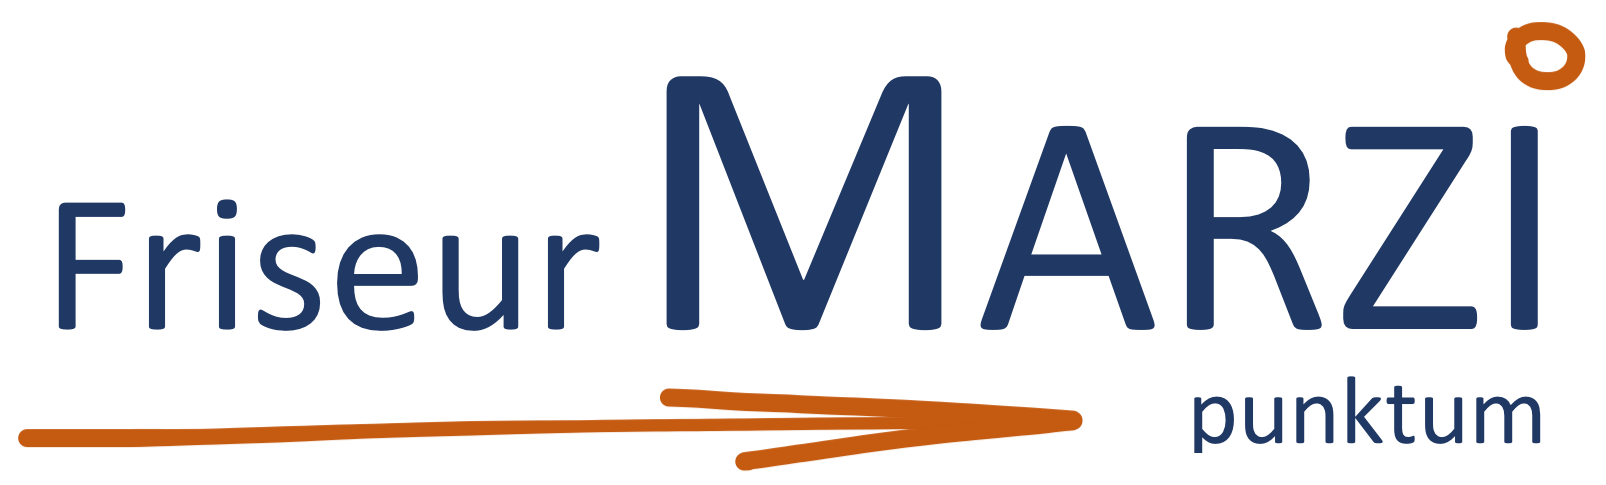 Friseur Marzi Logo